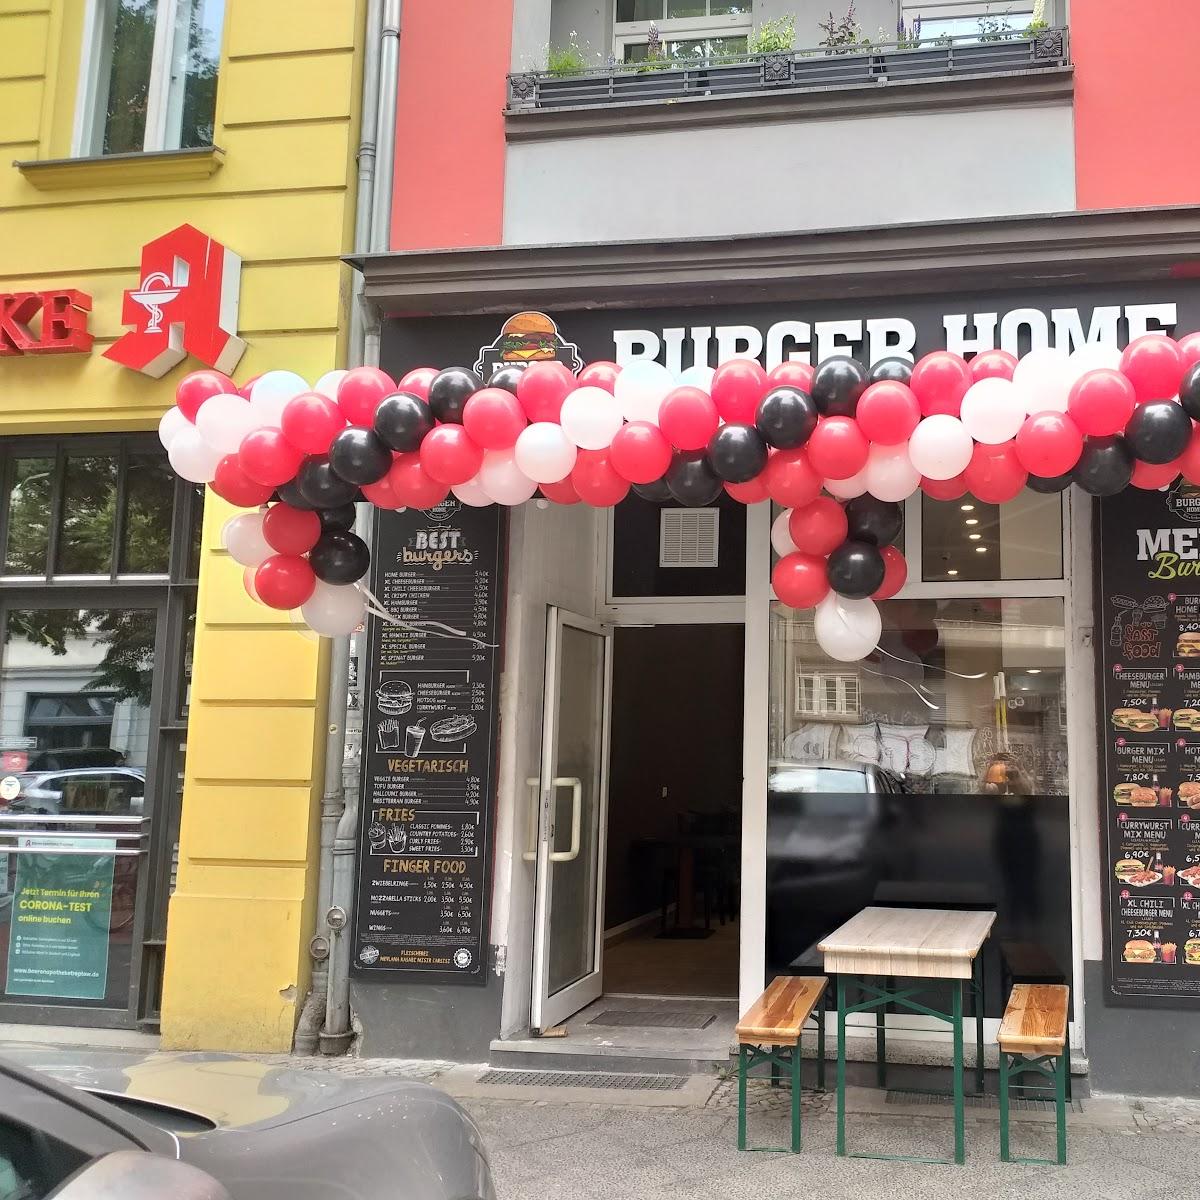 Restaurant "Burger Home" in Berlin